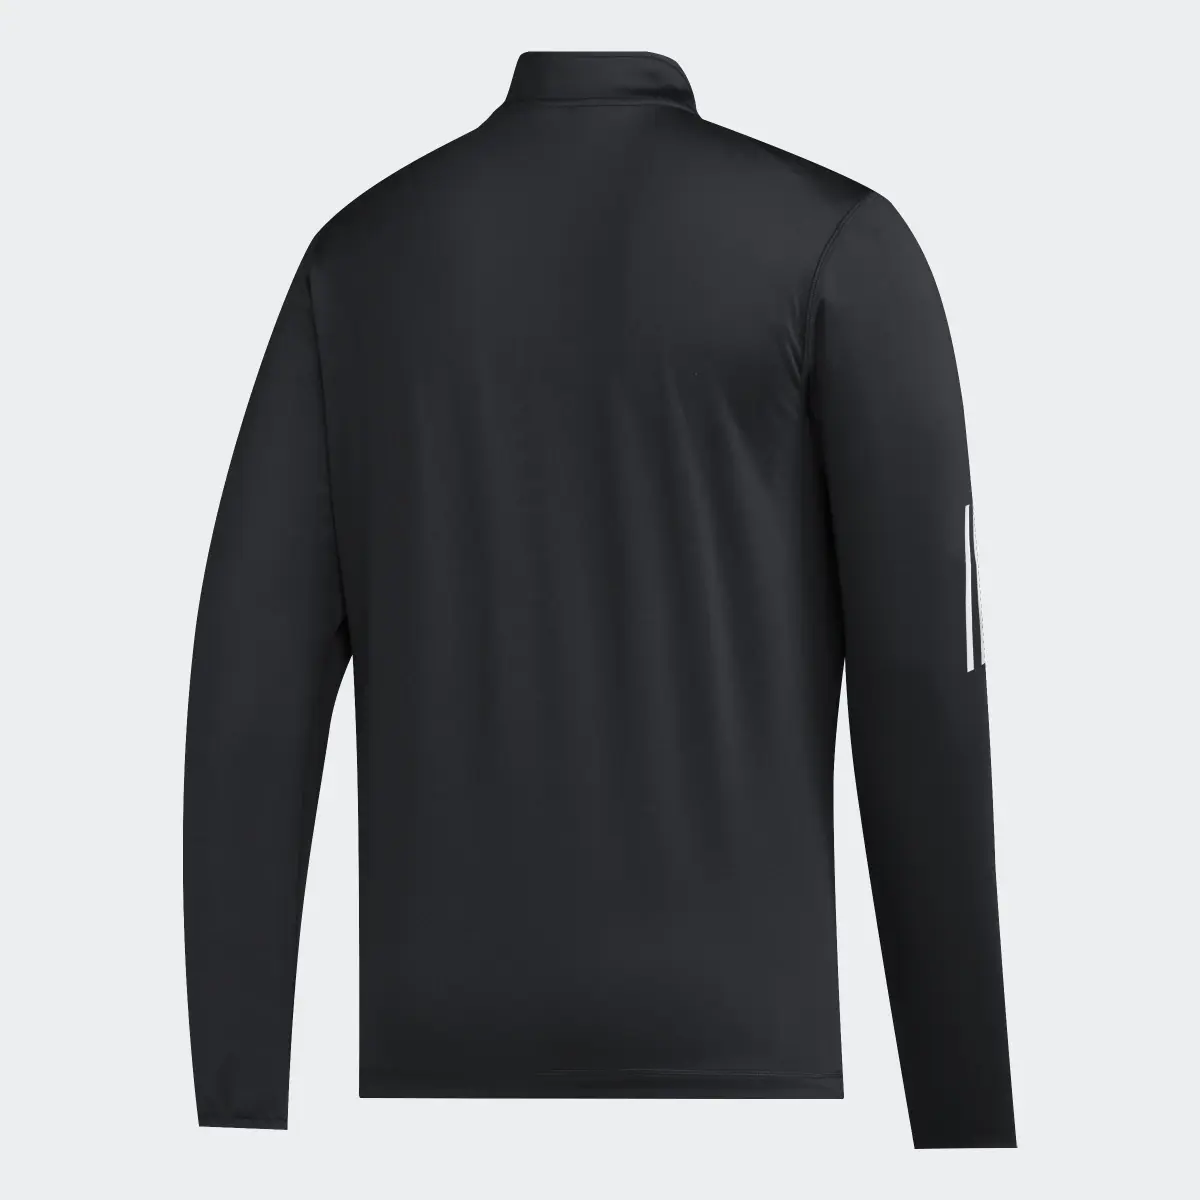 Adidas Miami Long Sleeve Sweatshirt. 2